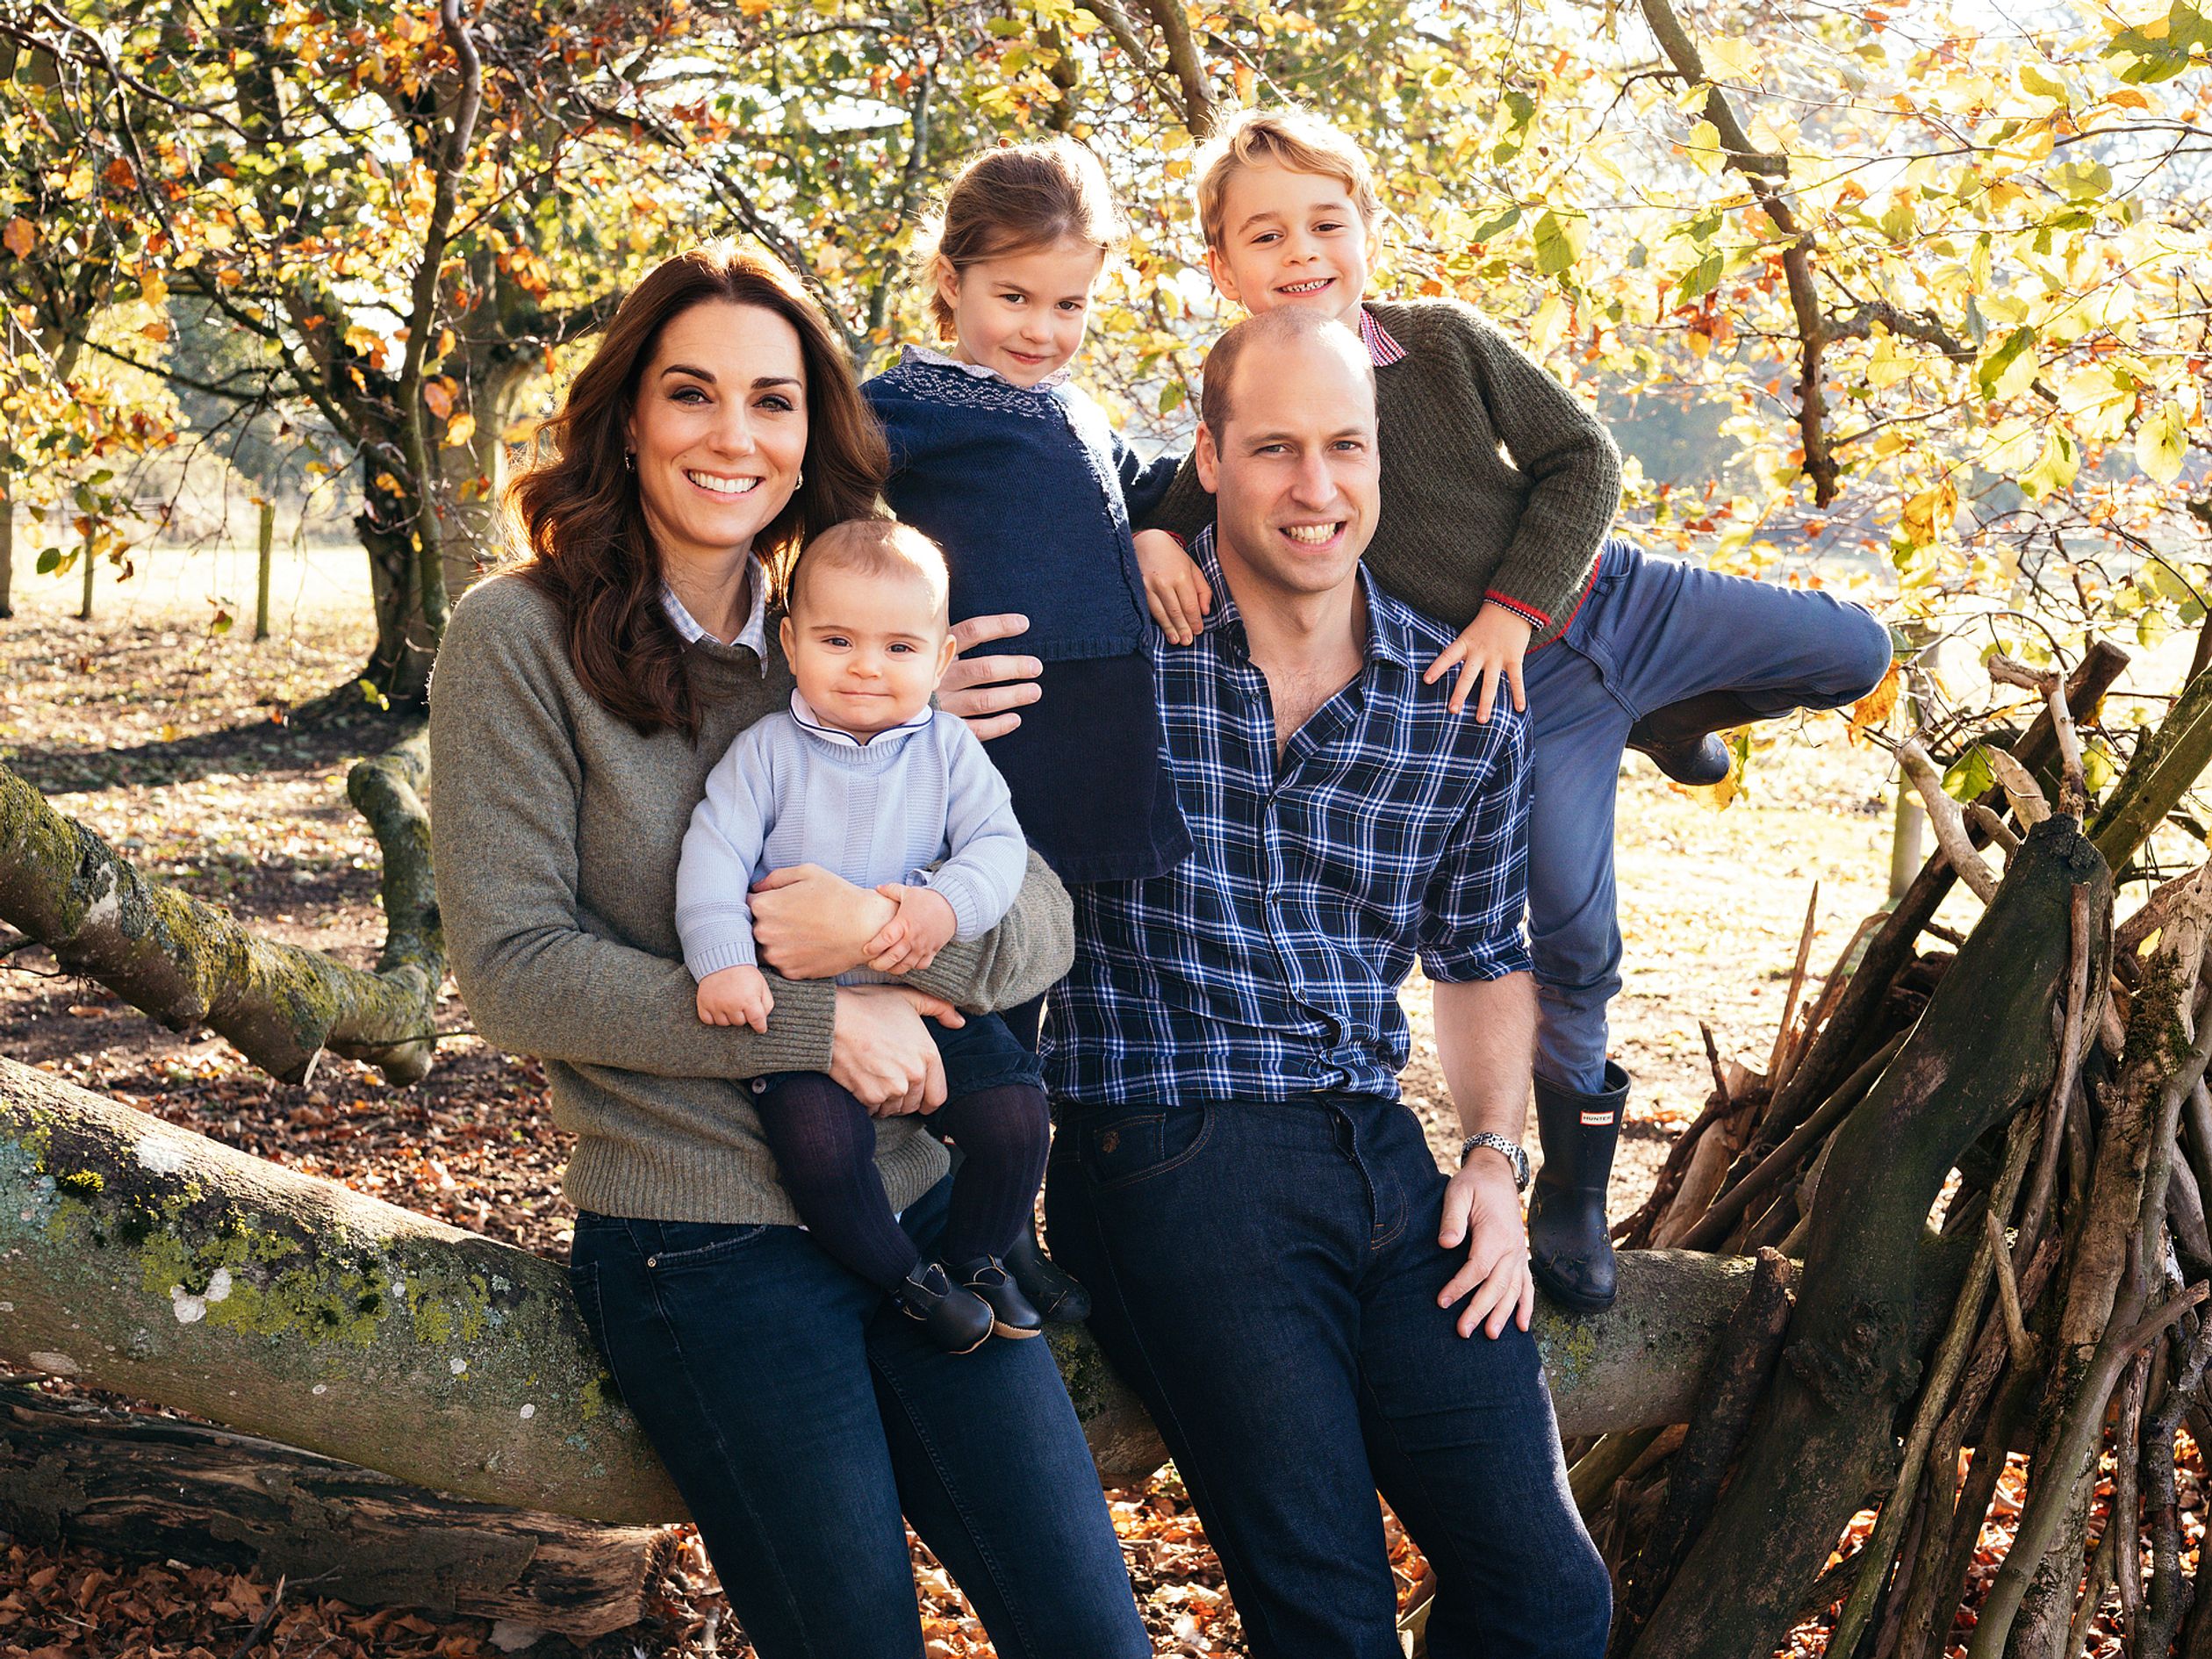 In aanloop naar Kerst deelde William en Catherine deze vrolijke gezinsfoto. Louis, hier acht maanden